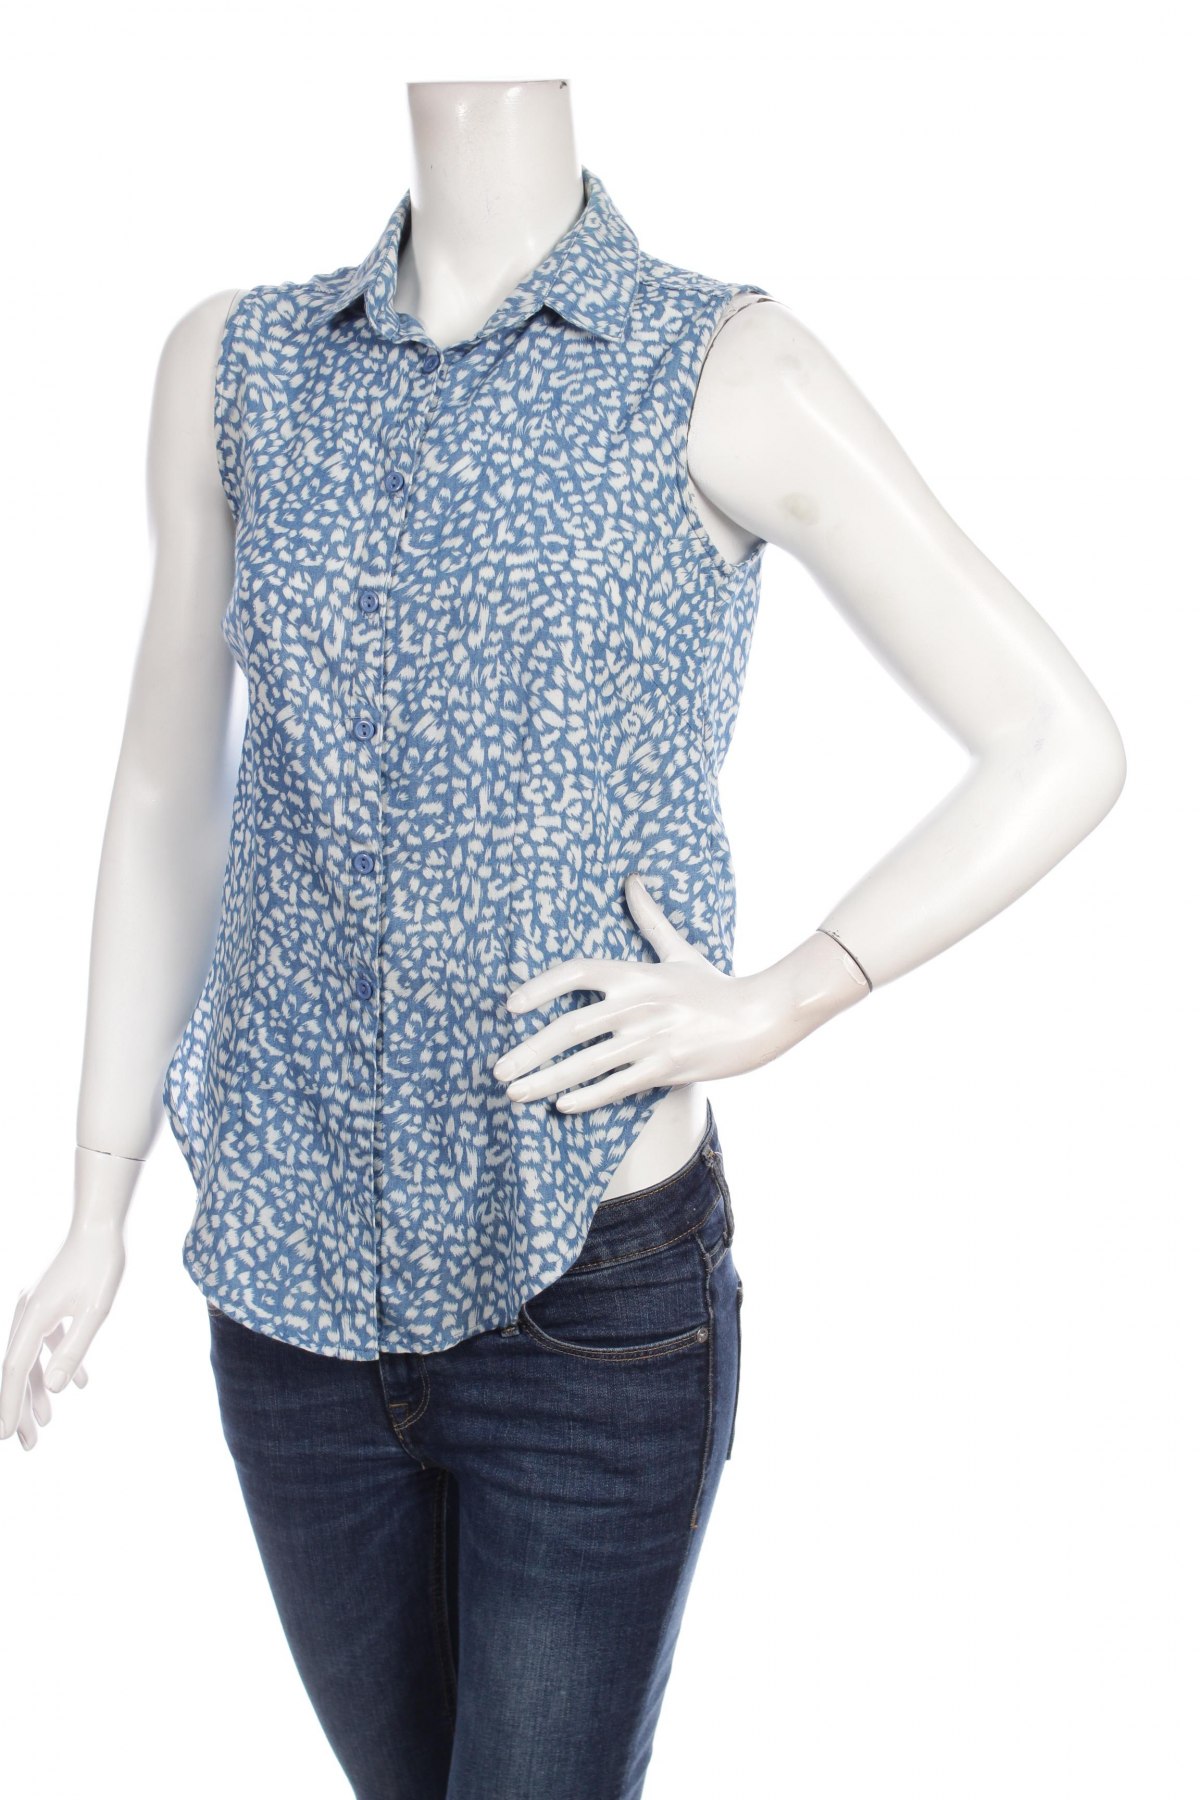 Γυναικείο πουκάμισο Uk 2 La, Μέγεθος M, Χρώμα Μπλέ, Τιμή 9,28 €